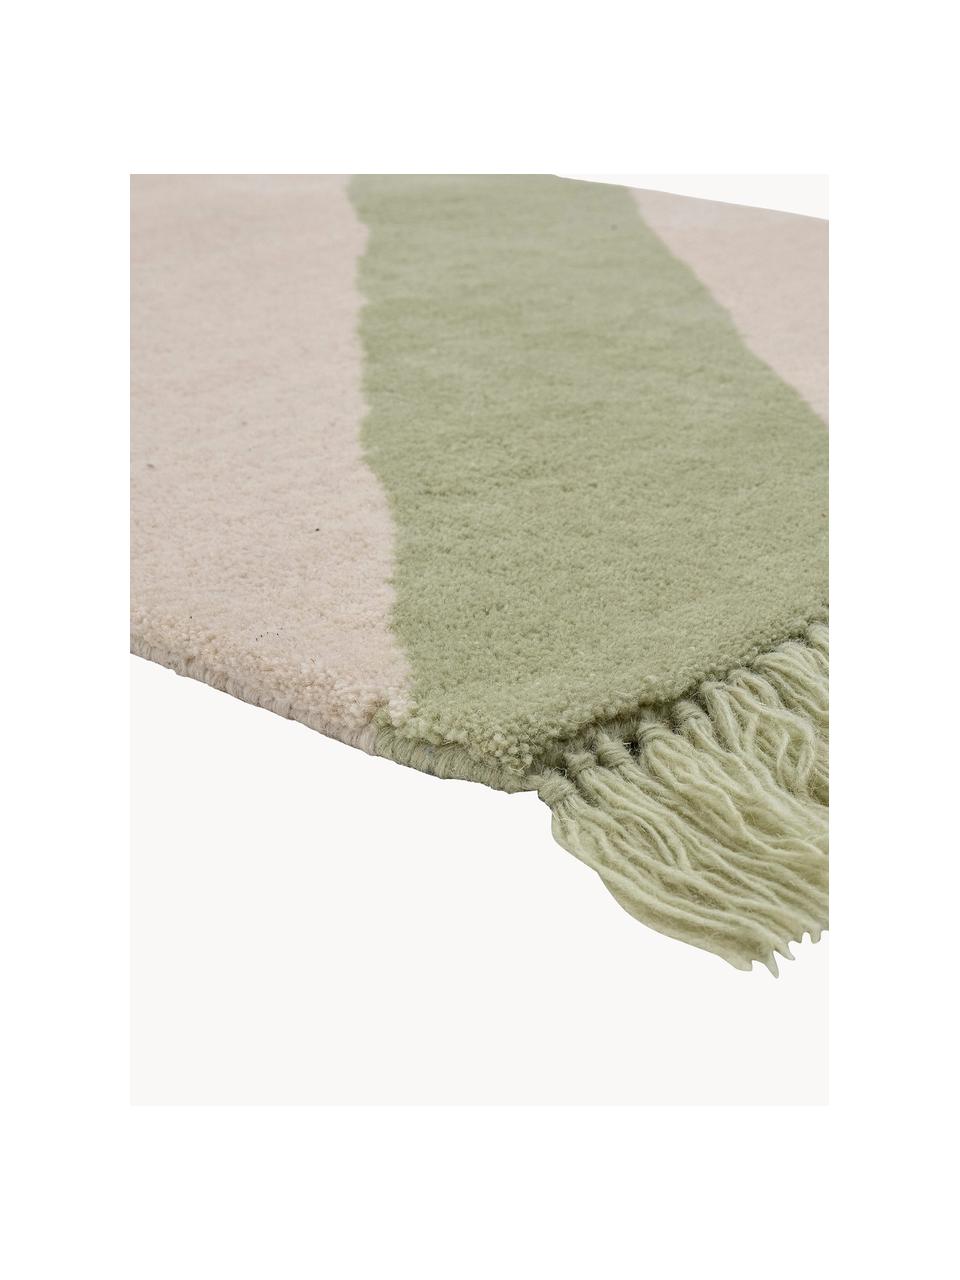 Tapis en laine pour enfant Froggy, 100 % laine

Les tapis en laine peuvent perdre des fibres lors des premières semaines et des peluches peuvent se former, ce phénomène est naturel et diminue à mesure de votre usage et du temps, Vert clair, beige clair, larg. 60 x long. 120 cm (taille XS)